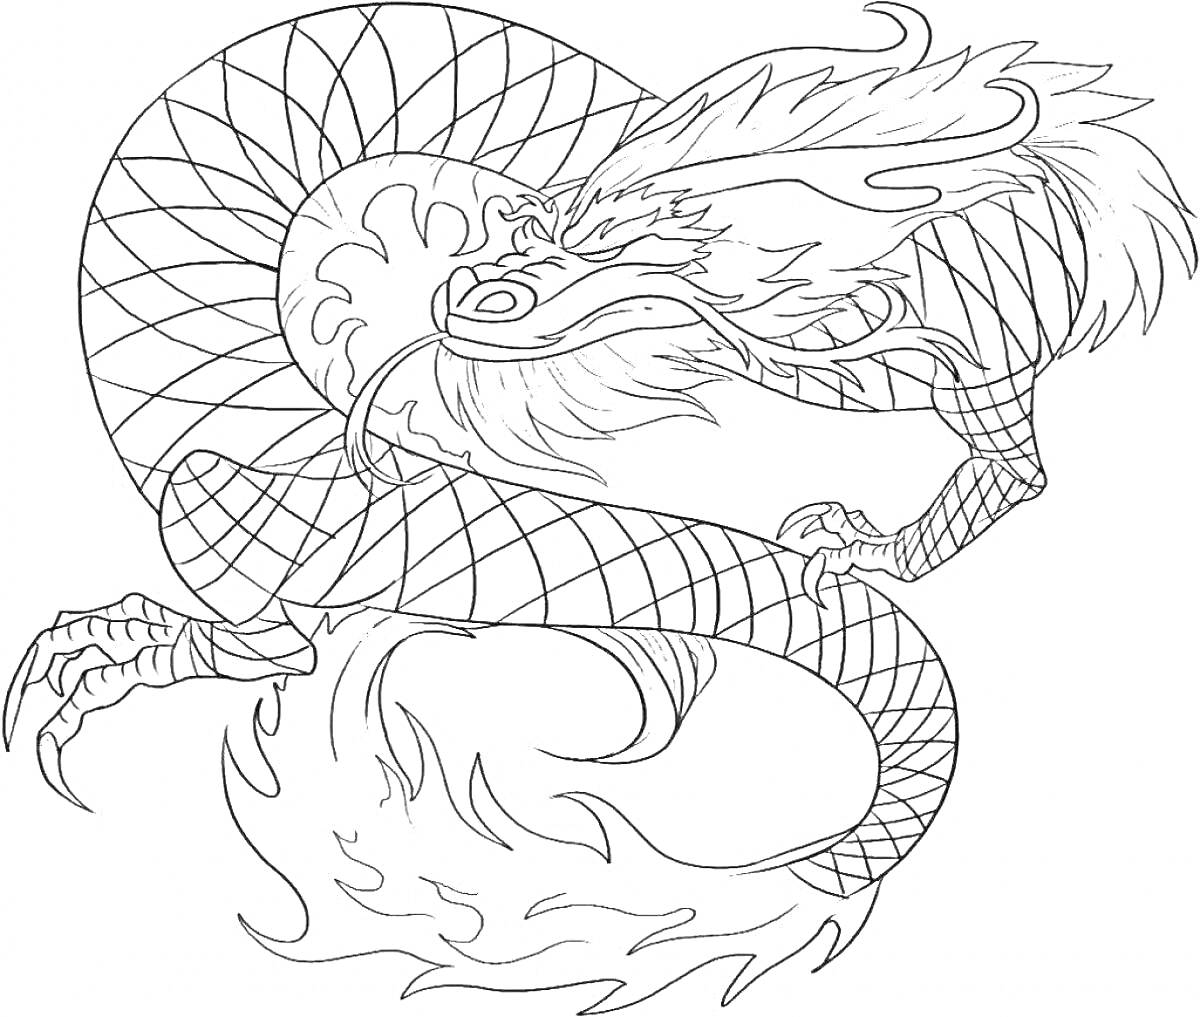 Раскраска Китайский дракон с чешуйчатым телом и огненными элементами